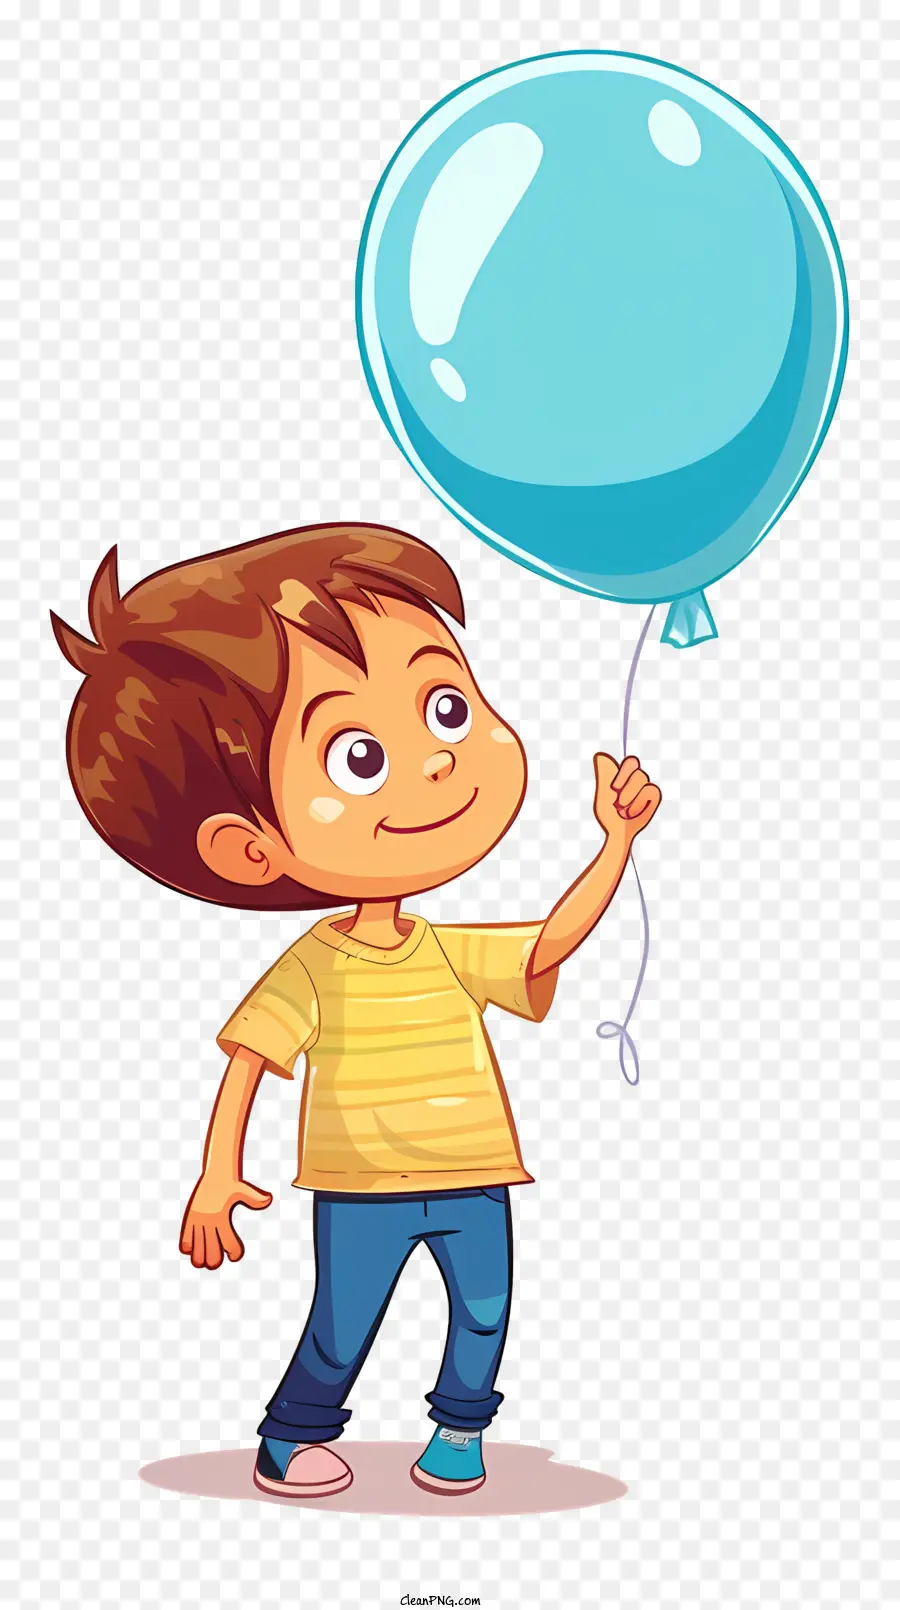 blauen Ballon - Happy Boy hält blauen Ballon und schaut nach links